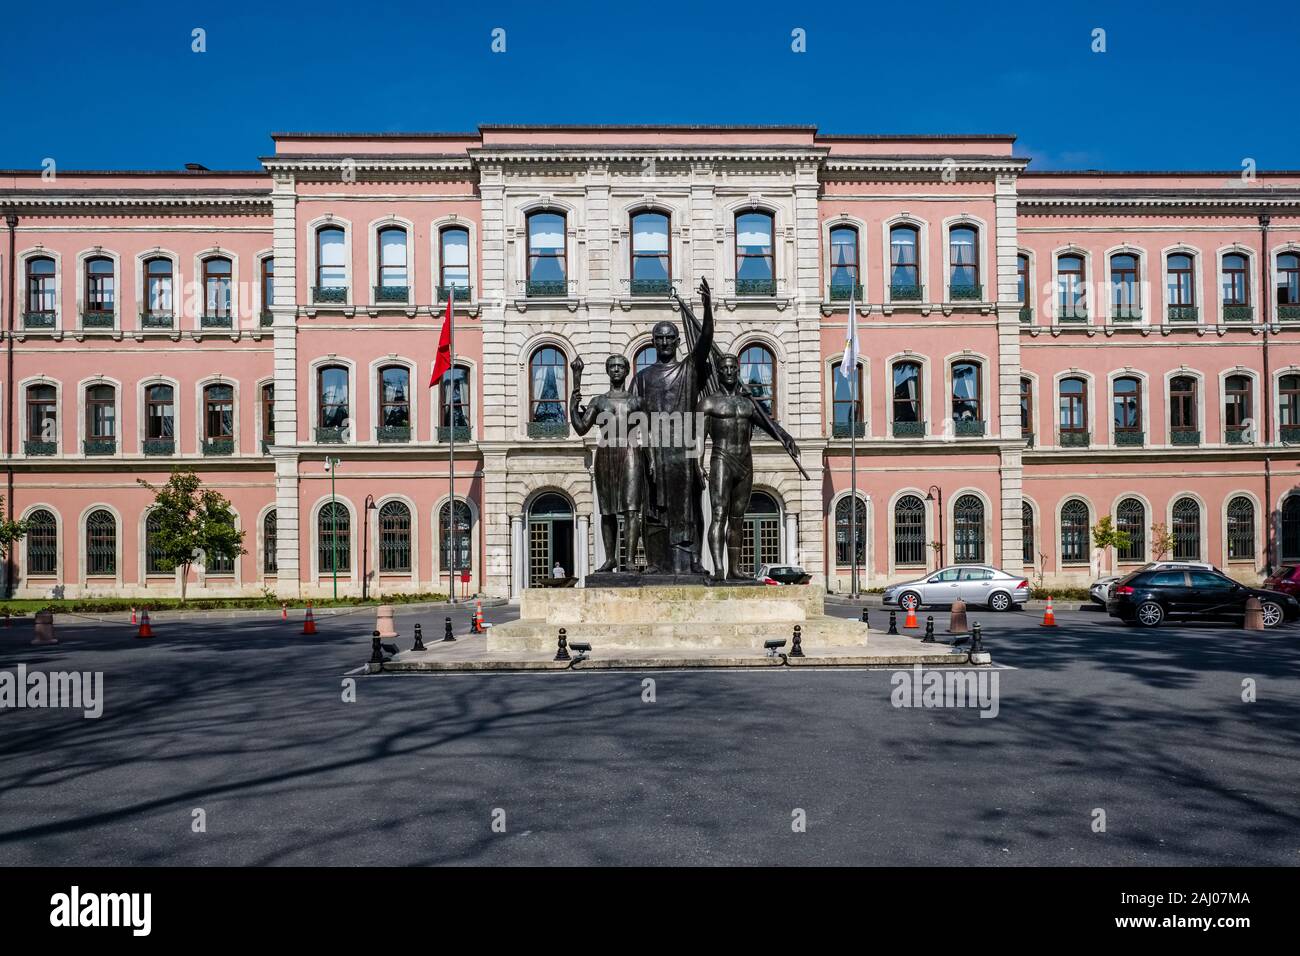 La statua di Ataturk e bandiera turca di fronte all'Università di Istanbul campus nel sobborgo Beyazit Foto Stock